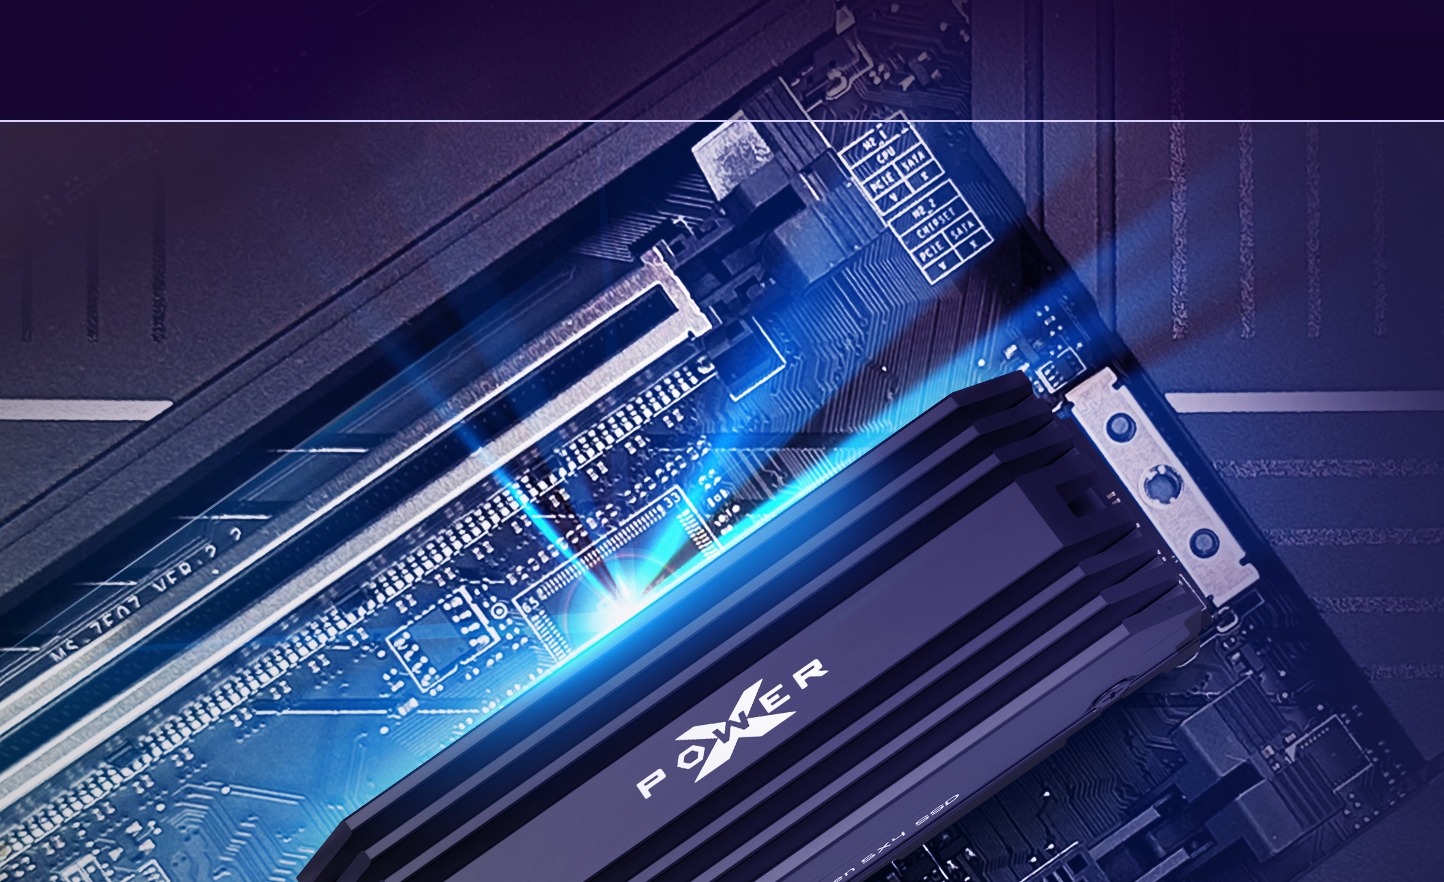 Immagine pubblicata in relazione al seguente contenuto: Silicon Power presenta gli SSD PCIe 5.0 XPower XS80 con velocit fino a 10GB/s | Nome immagine: news34912_Silicon-Power_XPower-XS80_SSD_2.jpg